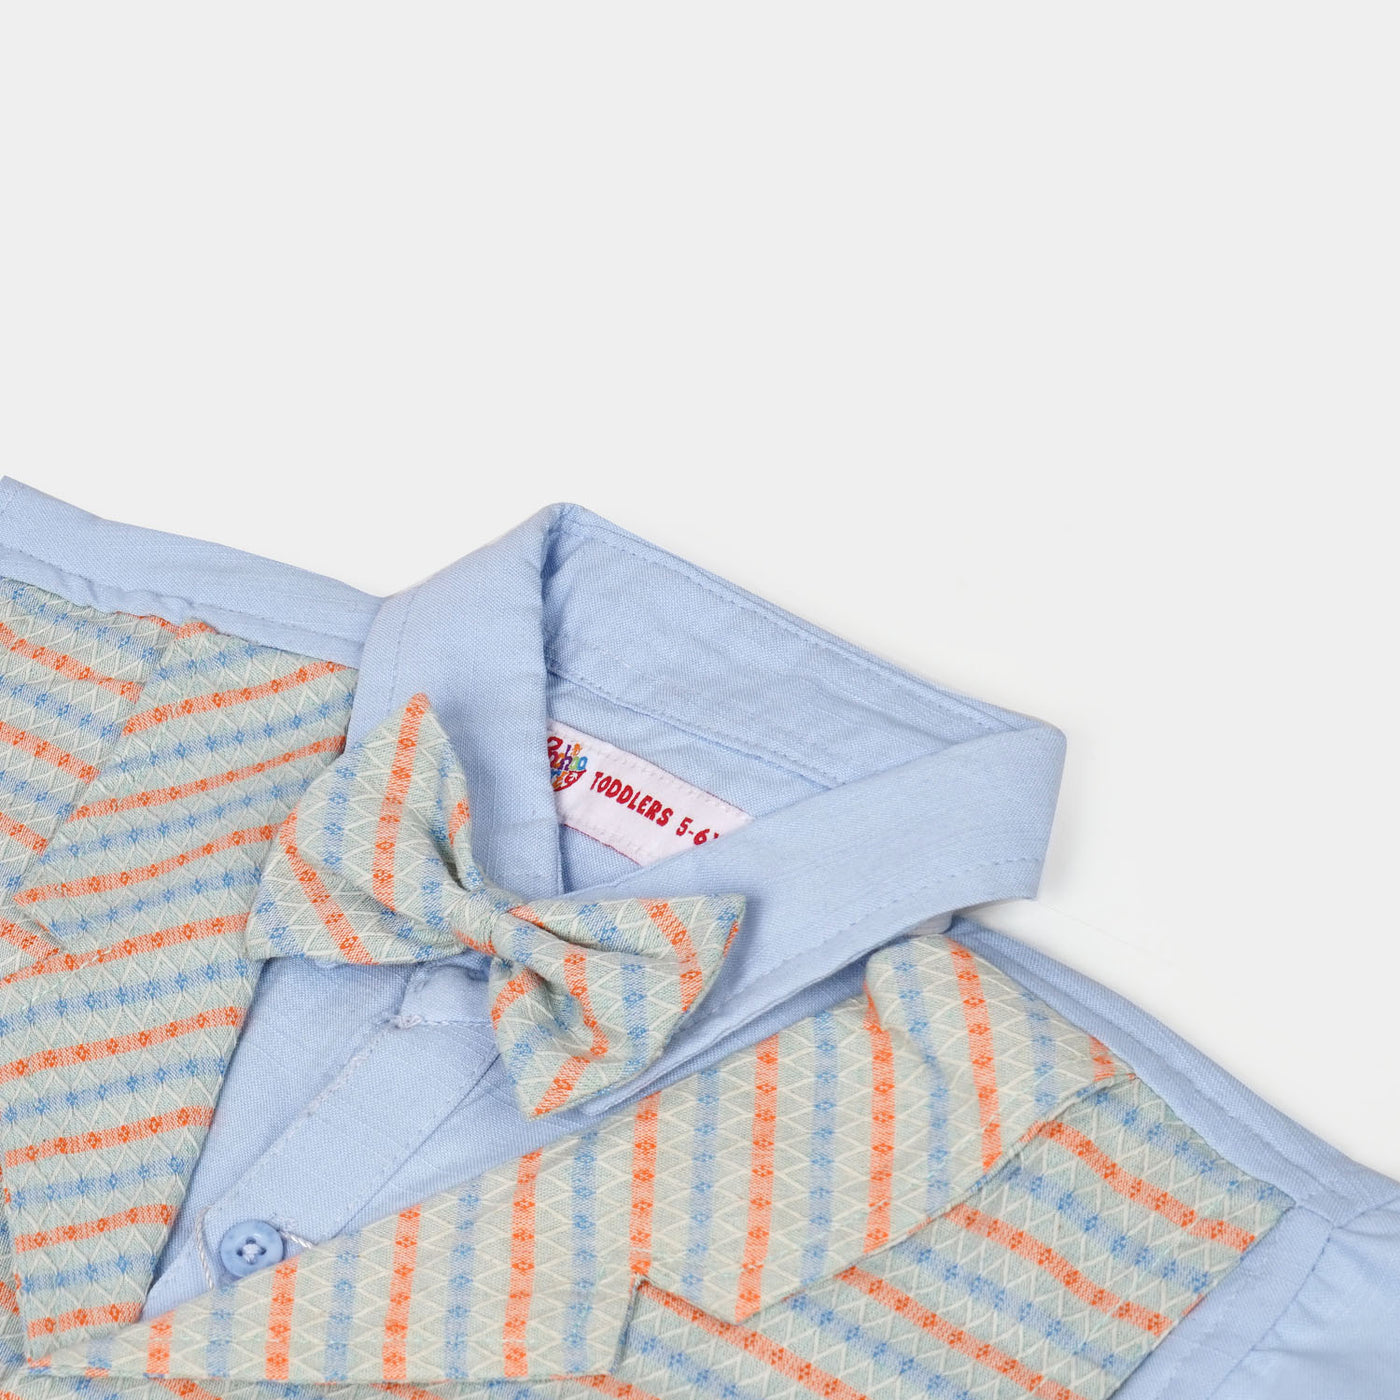 Boys Cotton Suit - Multi Stripe